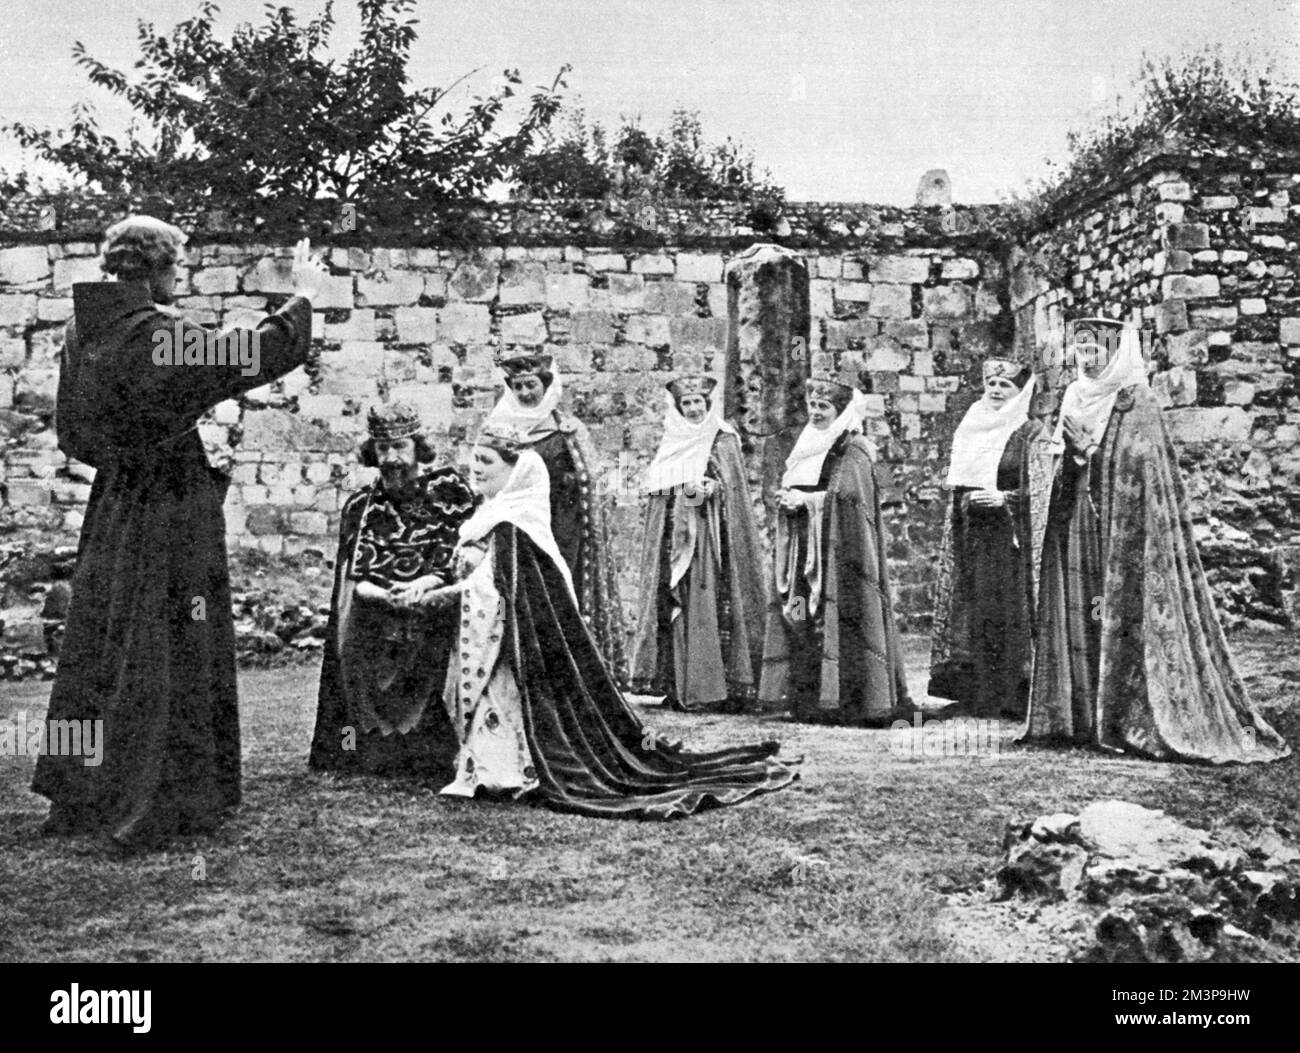 Der erste Erzbischof von Canterbury, St. Augustine, segnet König Ethelbert und seine Königin in einer Szene vom Canterbury Festival Pageant, basierend auf der Geschichte der St. Augustine Abbey außerhalb der Stadtmauern von Canterbury. Datum: 1951 Stockfoto